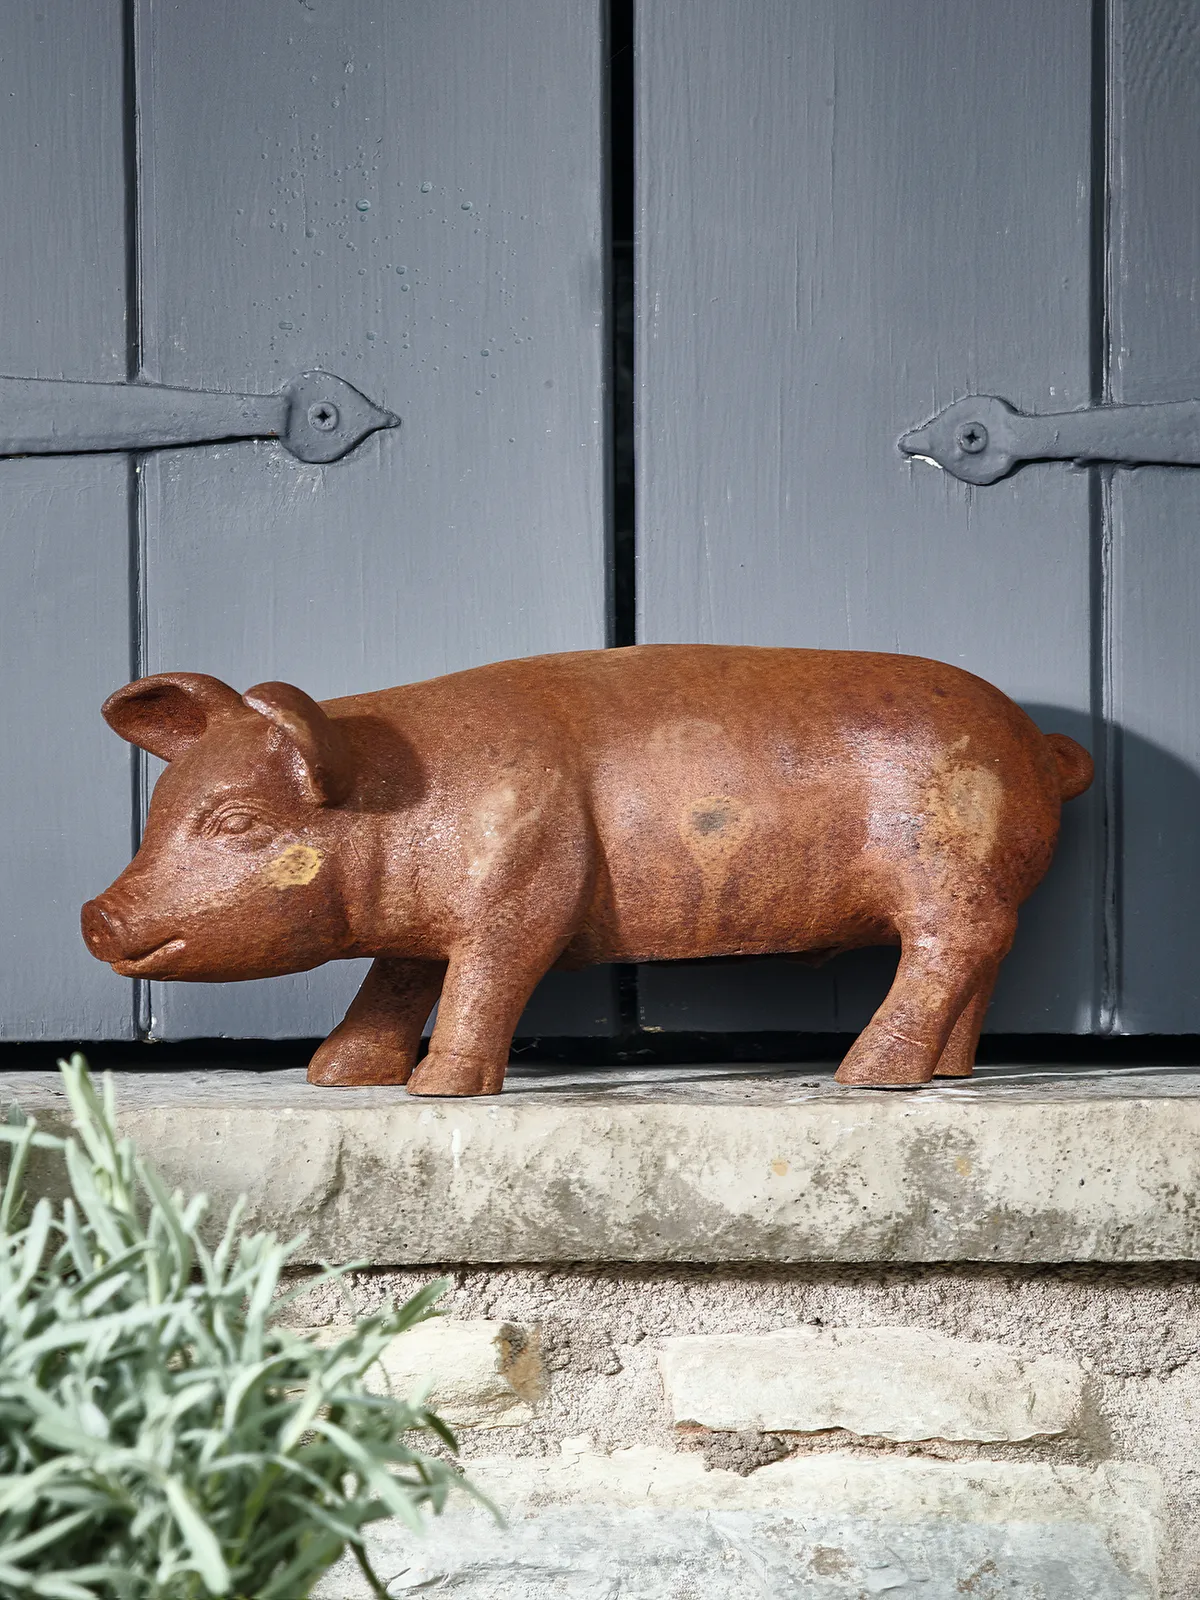 Rusty garden pig sculpture